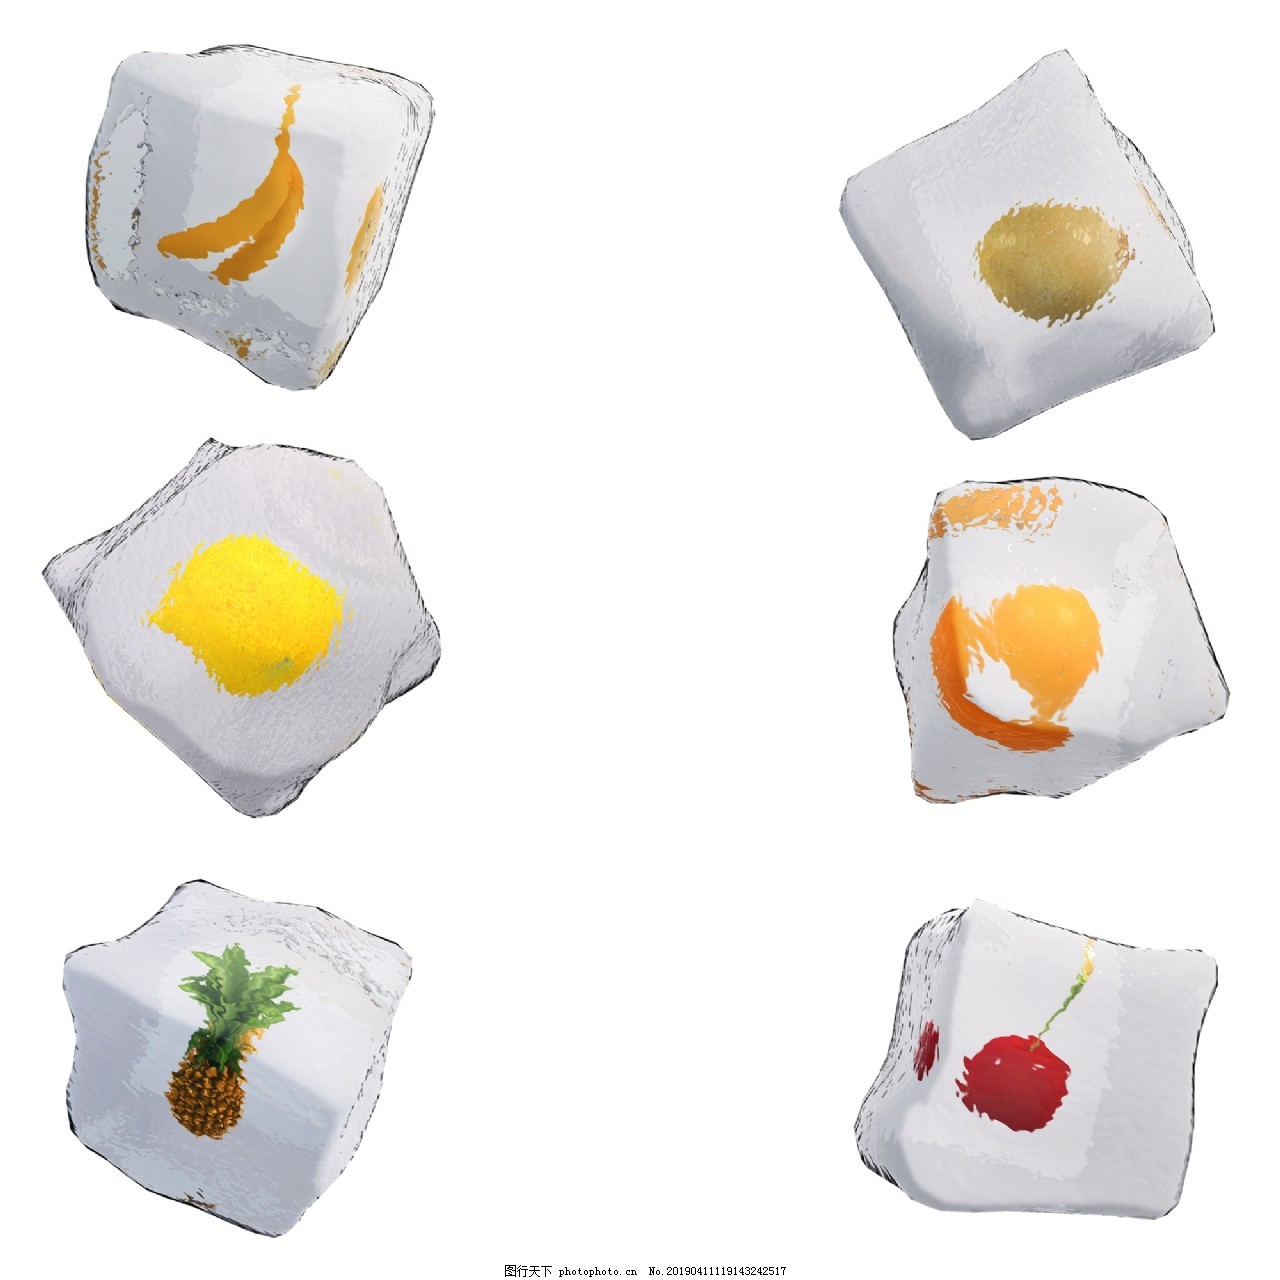 创意水果冰块套图png图,夏天,凉爽,仿真,质感